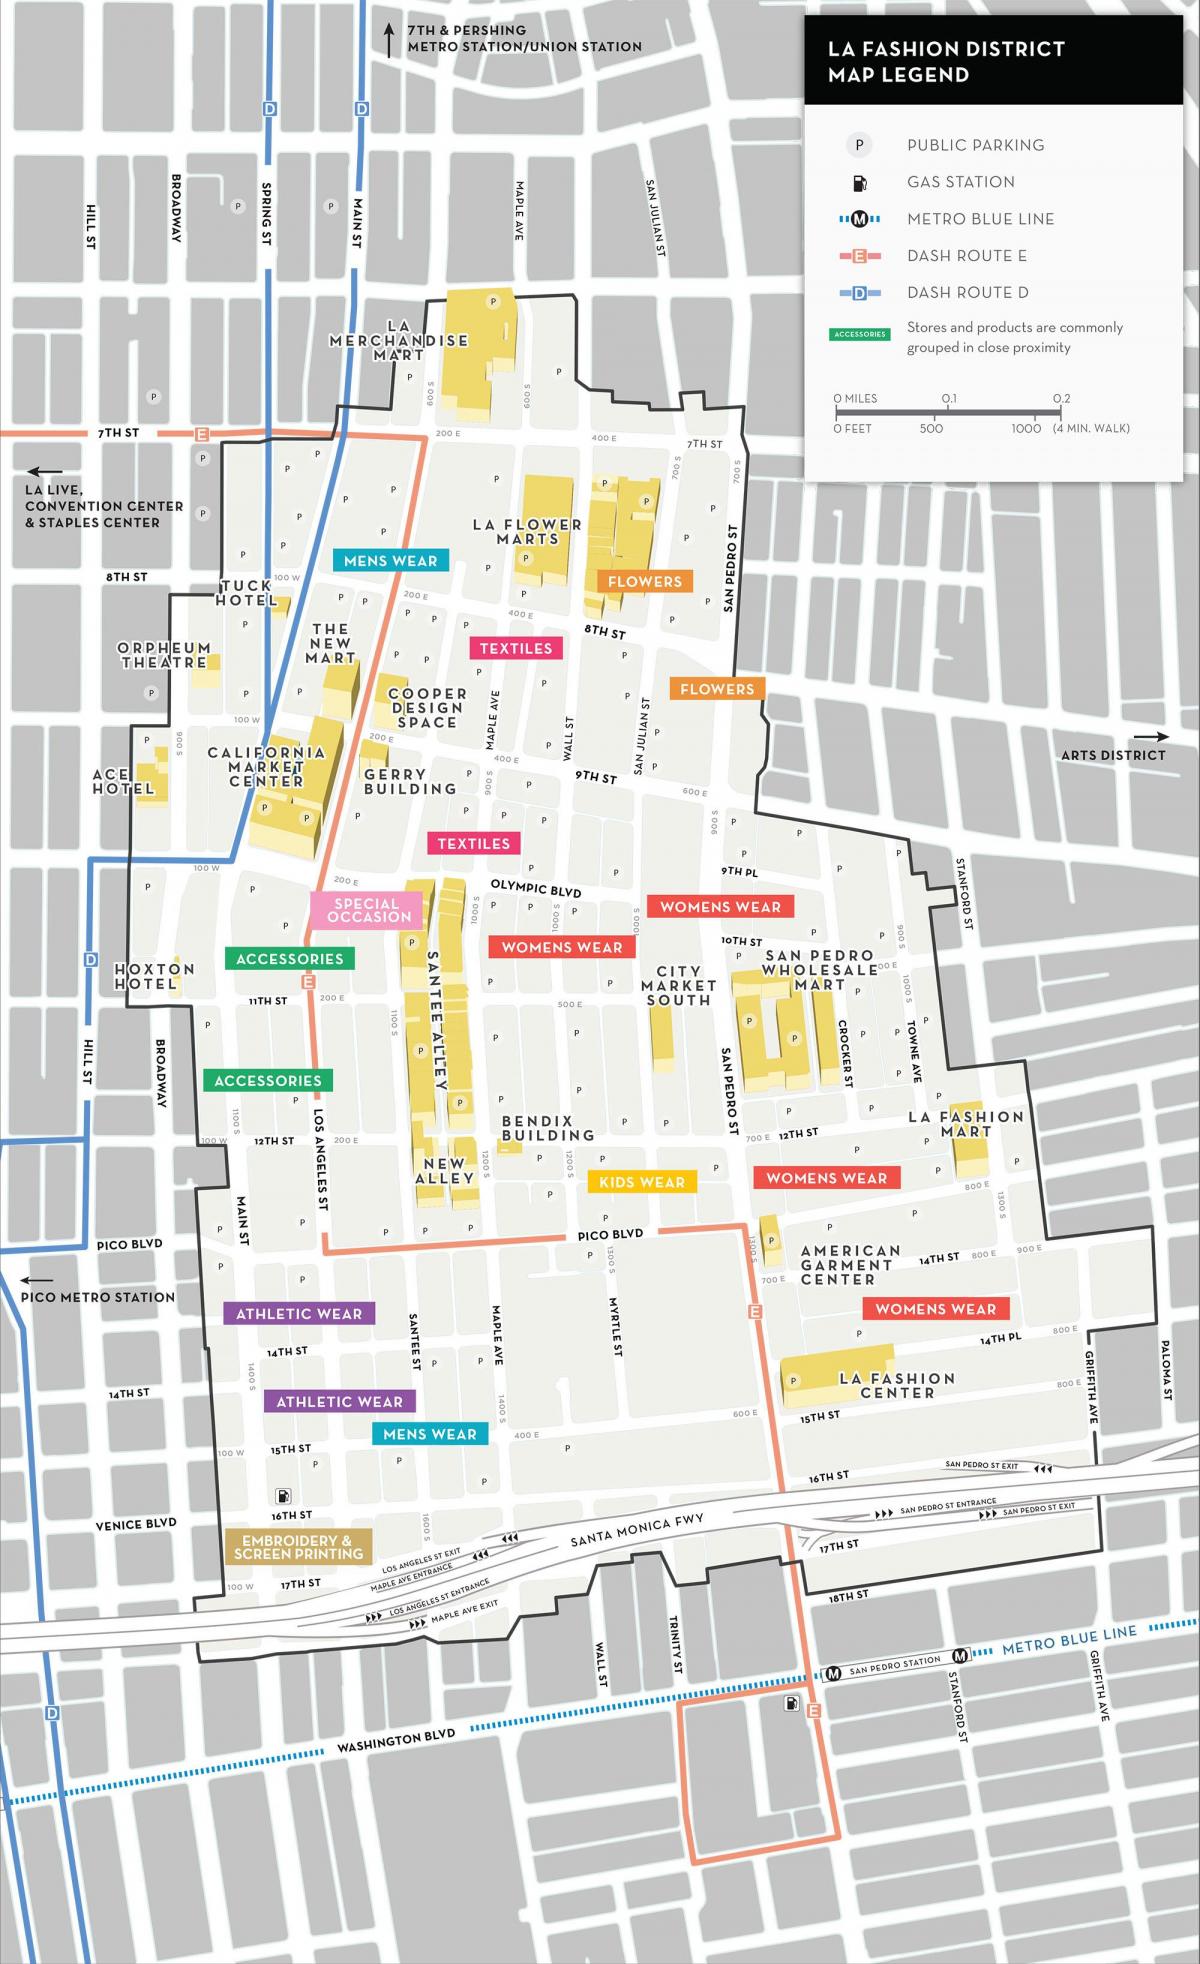 Los Angeles fashion district mapa